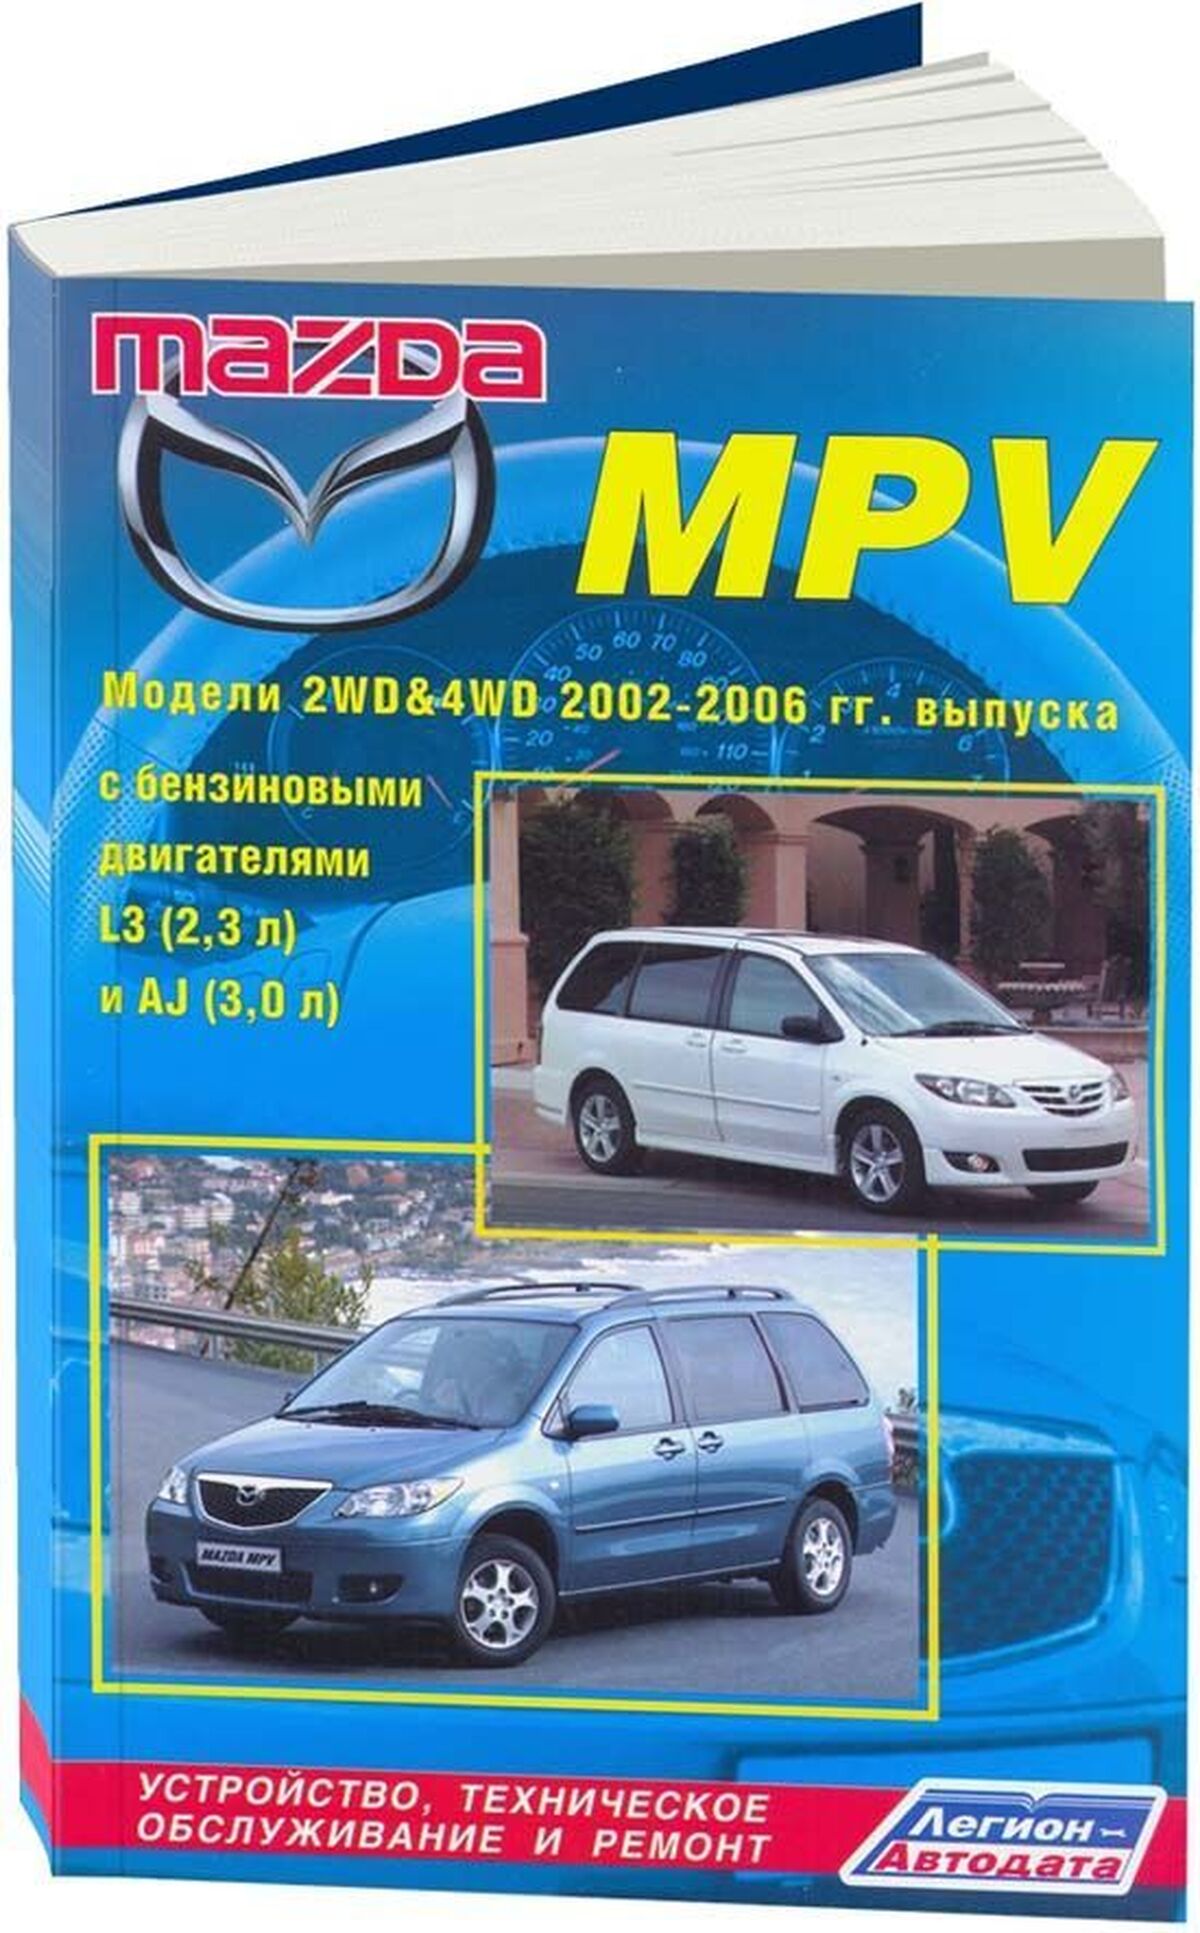 Книга: MAZDA MPV  (б) 2002-2006 г.в., рем., экспл., то | Легион-Aвтодата